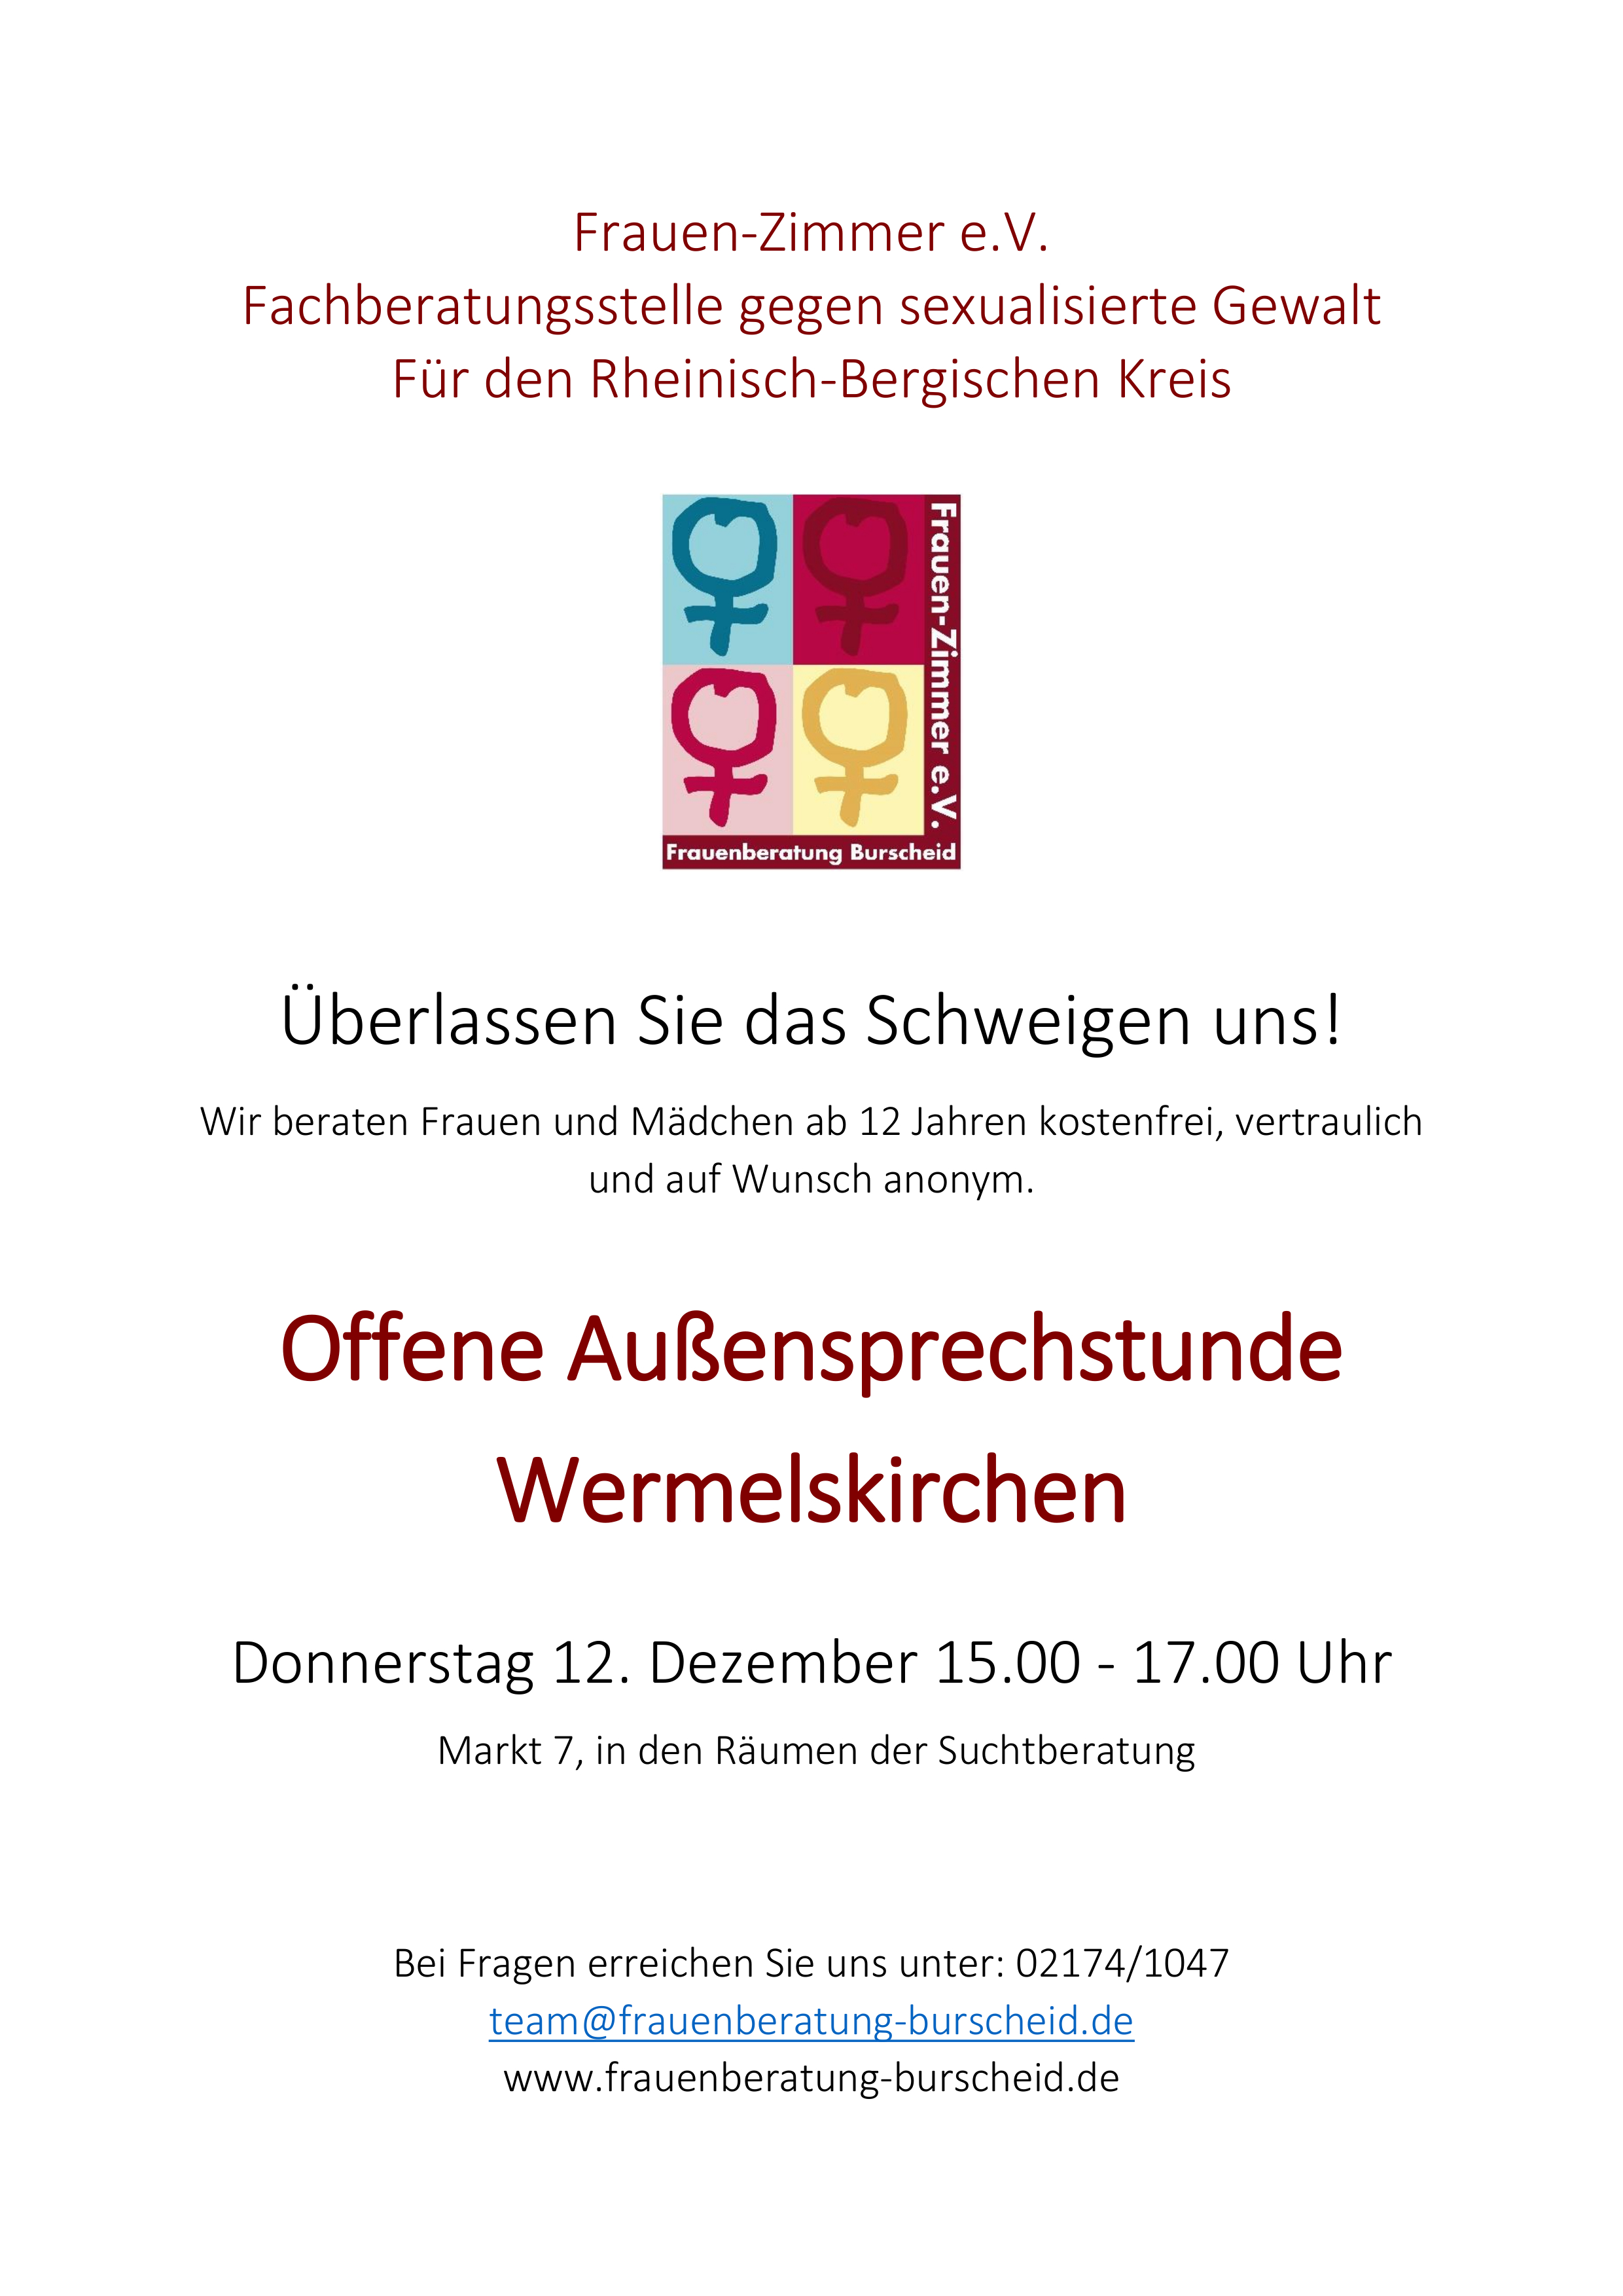 offene Außensprechstunde Wermelskirchen 2019